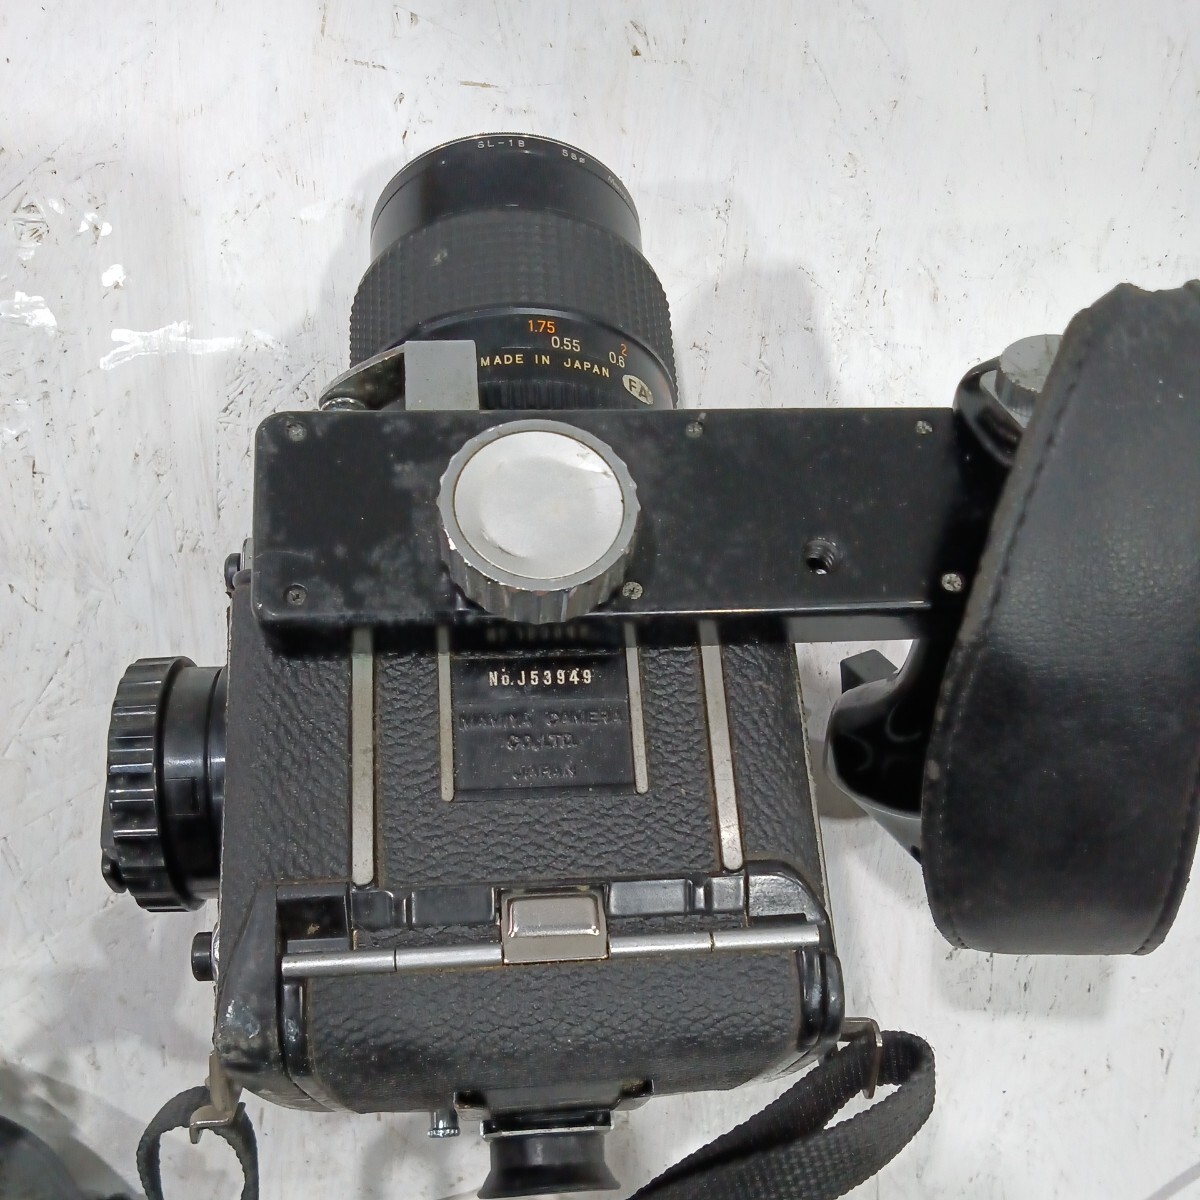 Mamiya マミヤ フィルムカメラ J53949 CAMERA m645 MAMIYA-SEKOR 1:2.8 f=55mm No.18595 日本製 ジャンク品 現状品 レトロ アンティーク